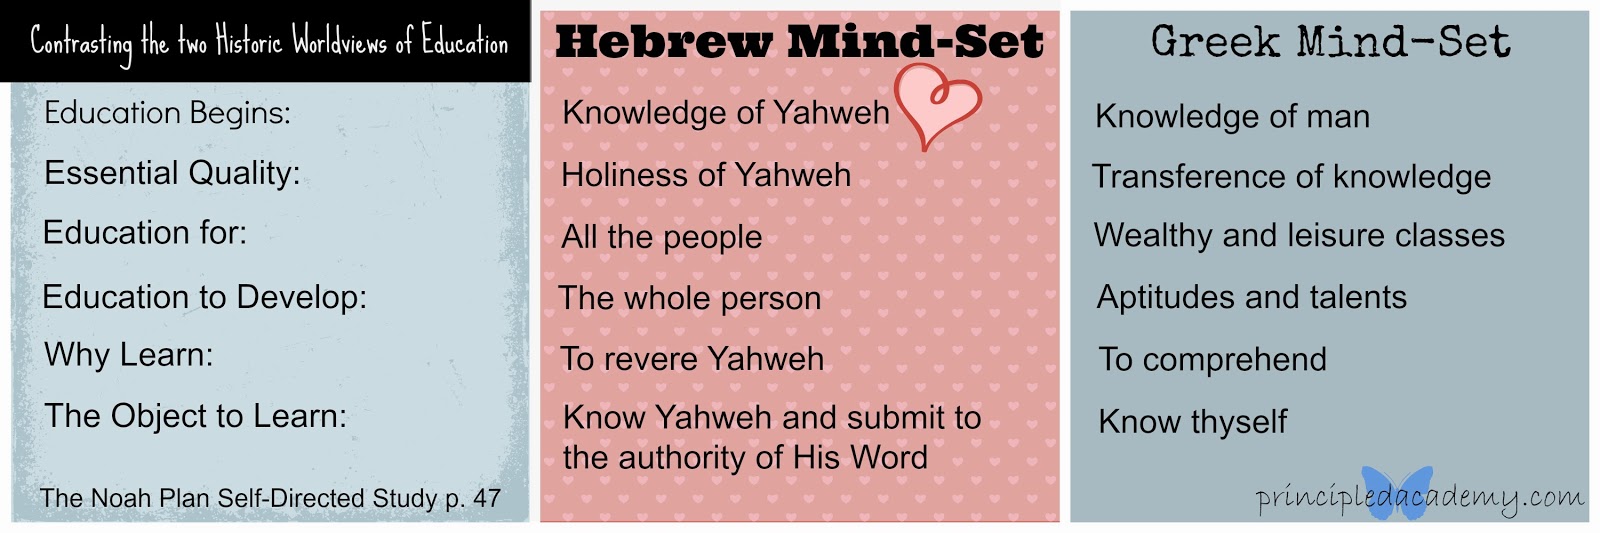 Hebrew Education, Hebrew Mind-set, Greek Mind-Set